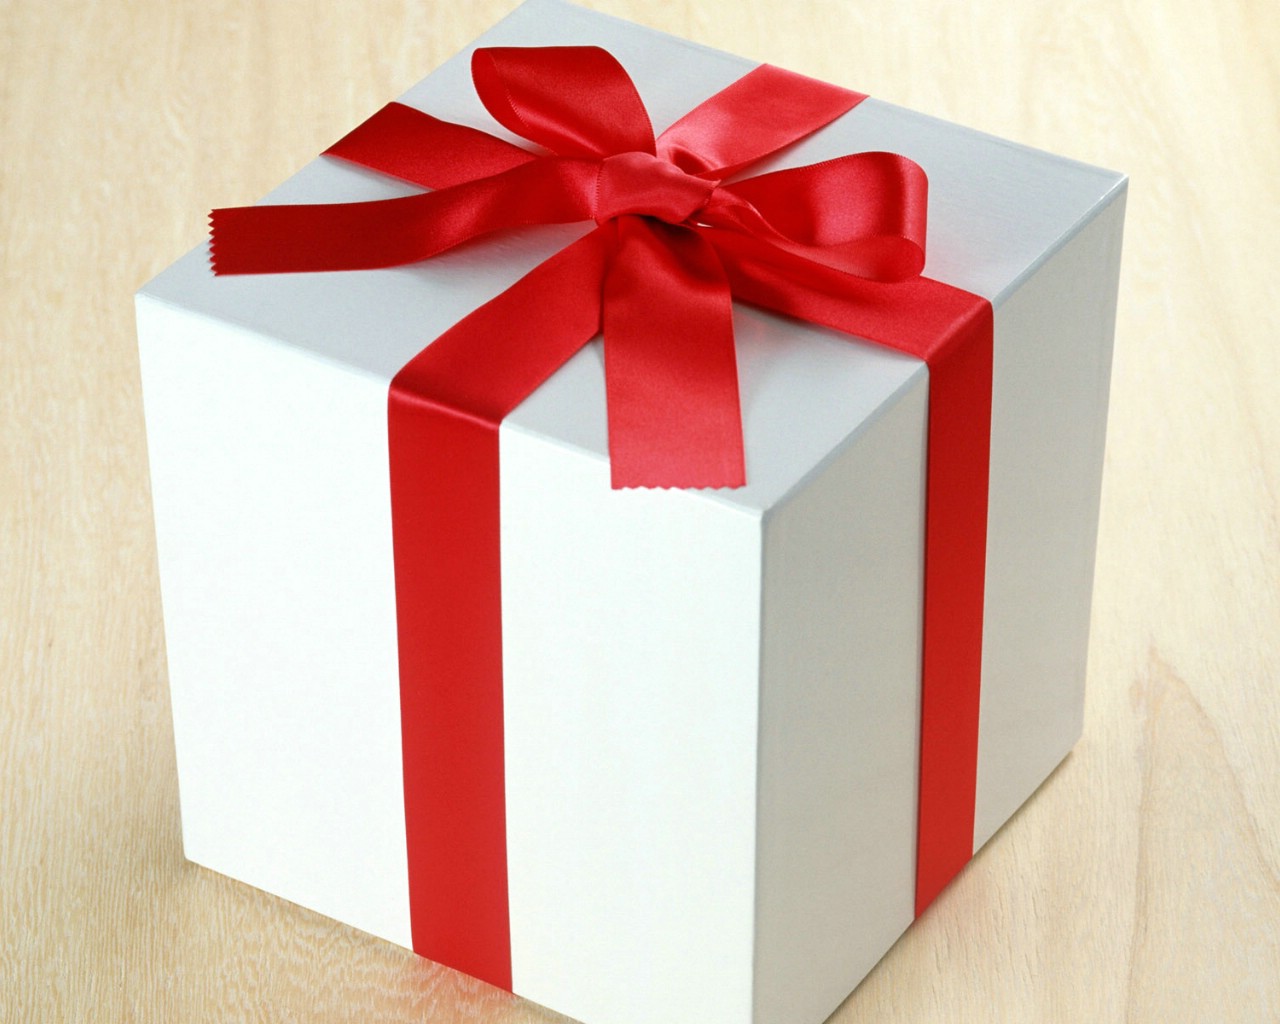 壁纸1280x1024礼物包装 2 8壁纸 礼物包装壁纸 礼物包装图片 礼物包装素材 节日壁纸 节日图库 节日图片素材桌面壁纸